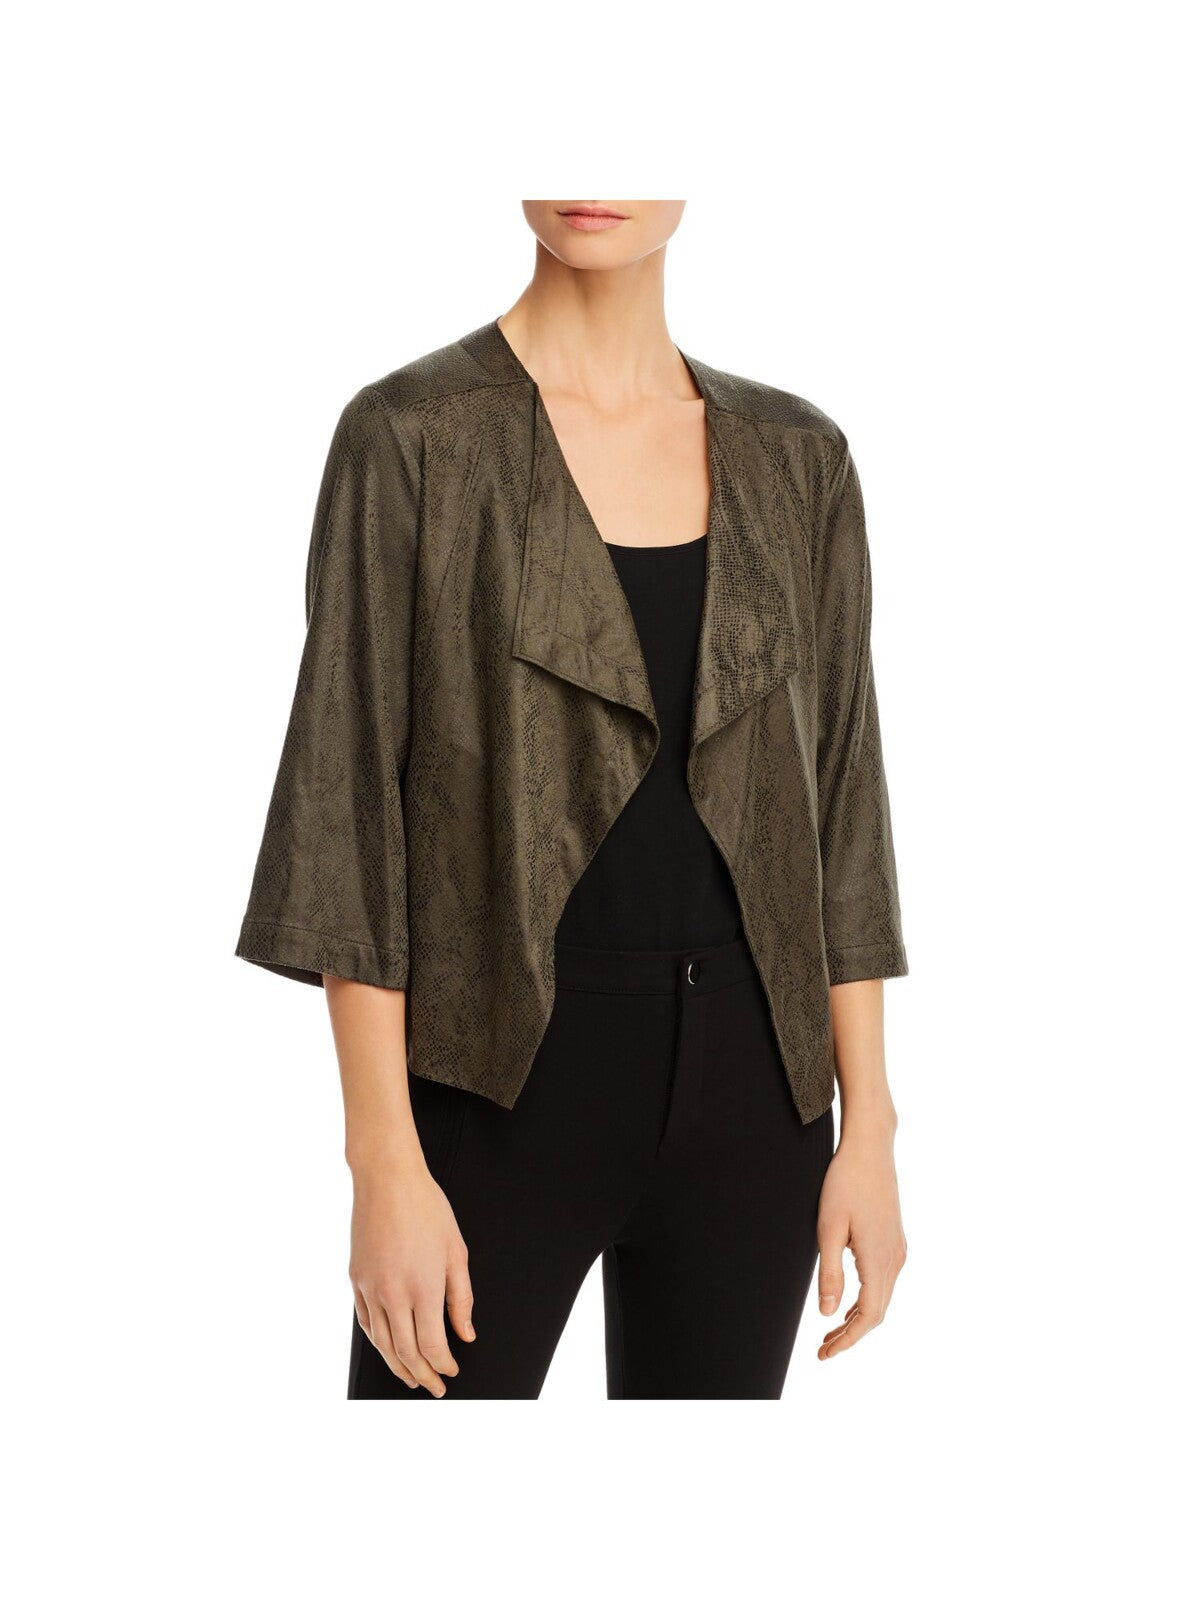 LYSSE Womens Green Faux Suede 3/4 Sleeve Open Front Blazer Jacket M